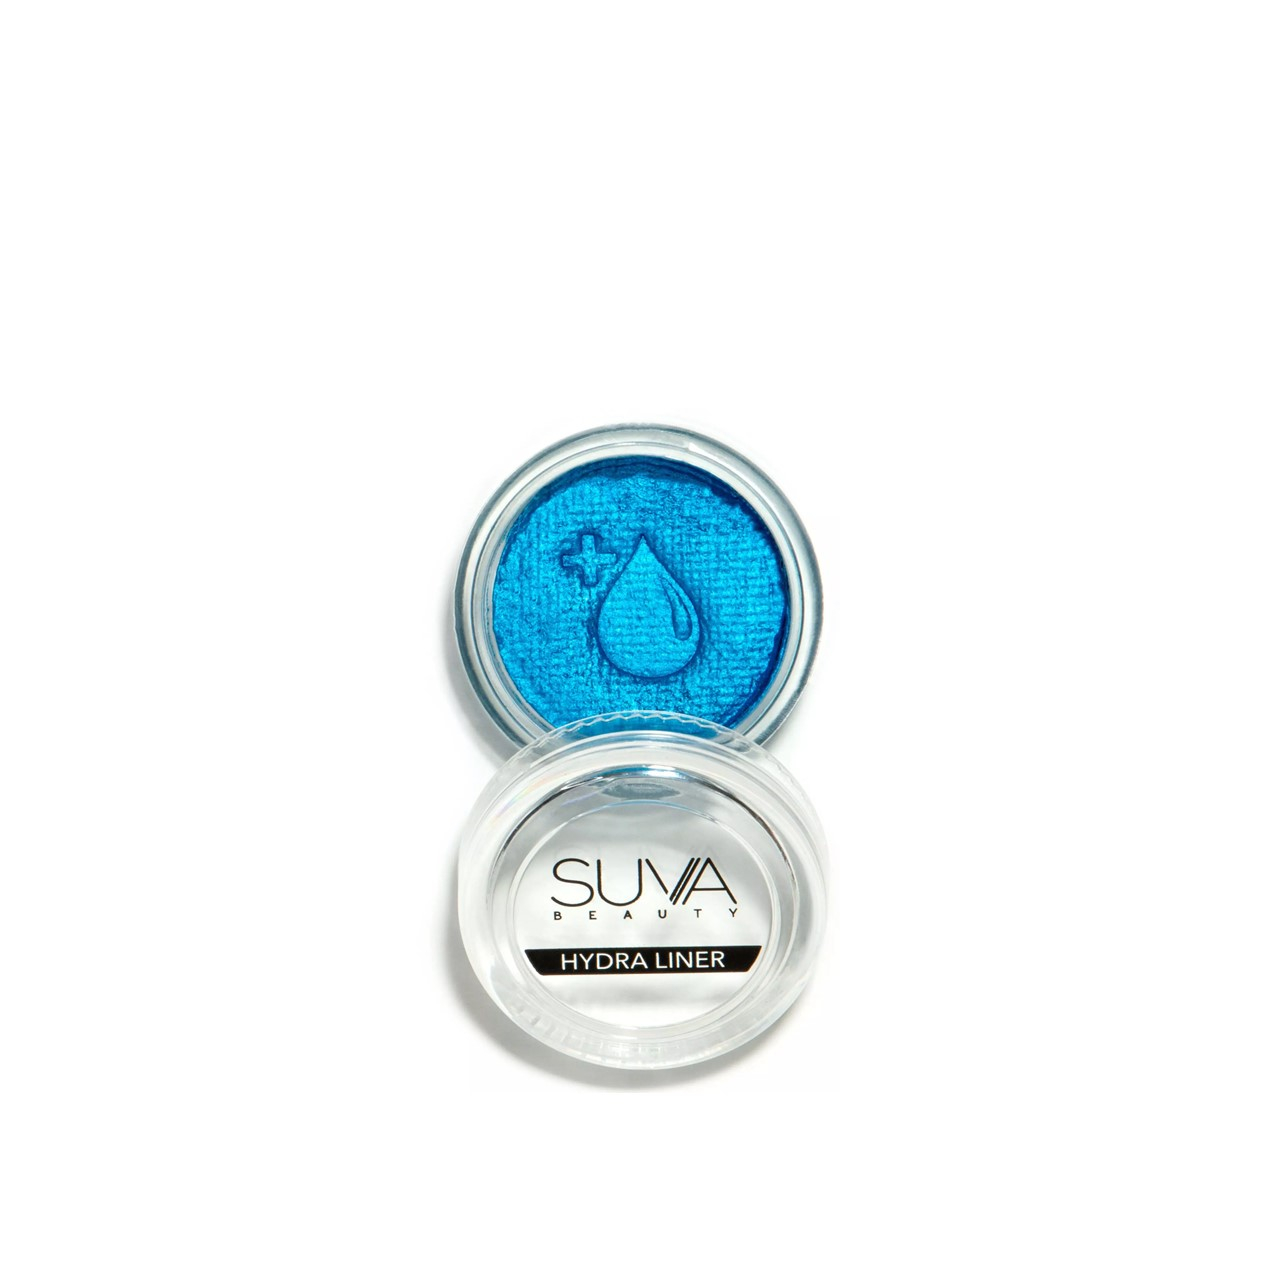 SUVA Beauty Hydra Liner Blue Steel Chrome Cake Eyeliner 10g